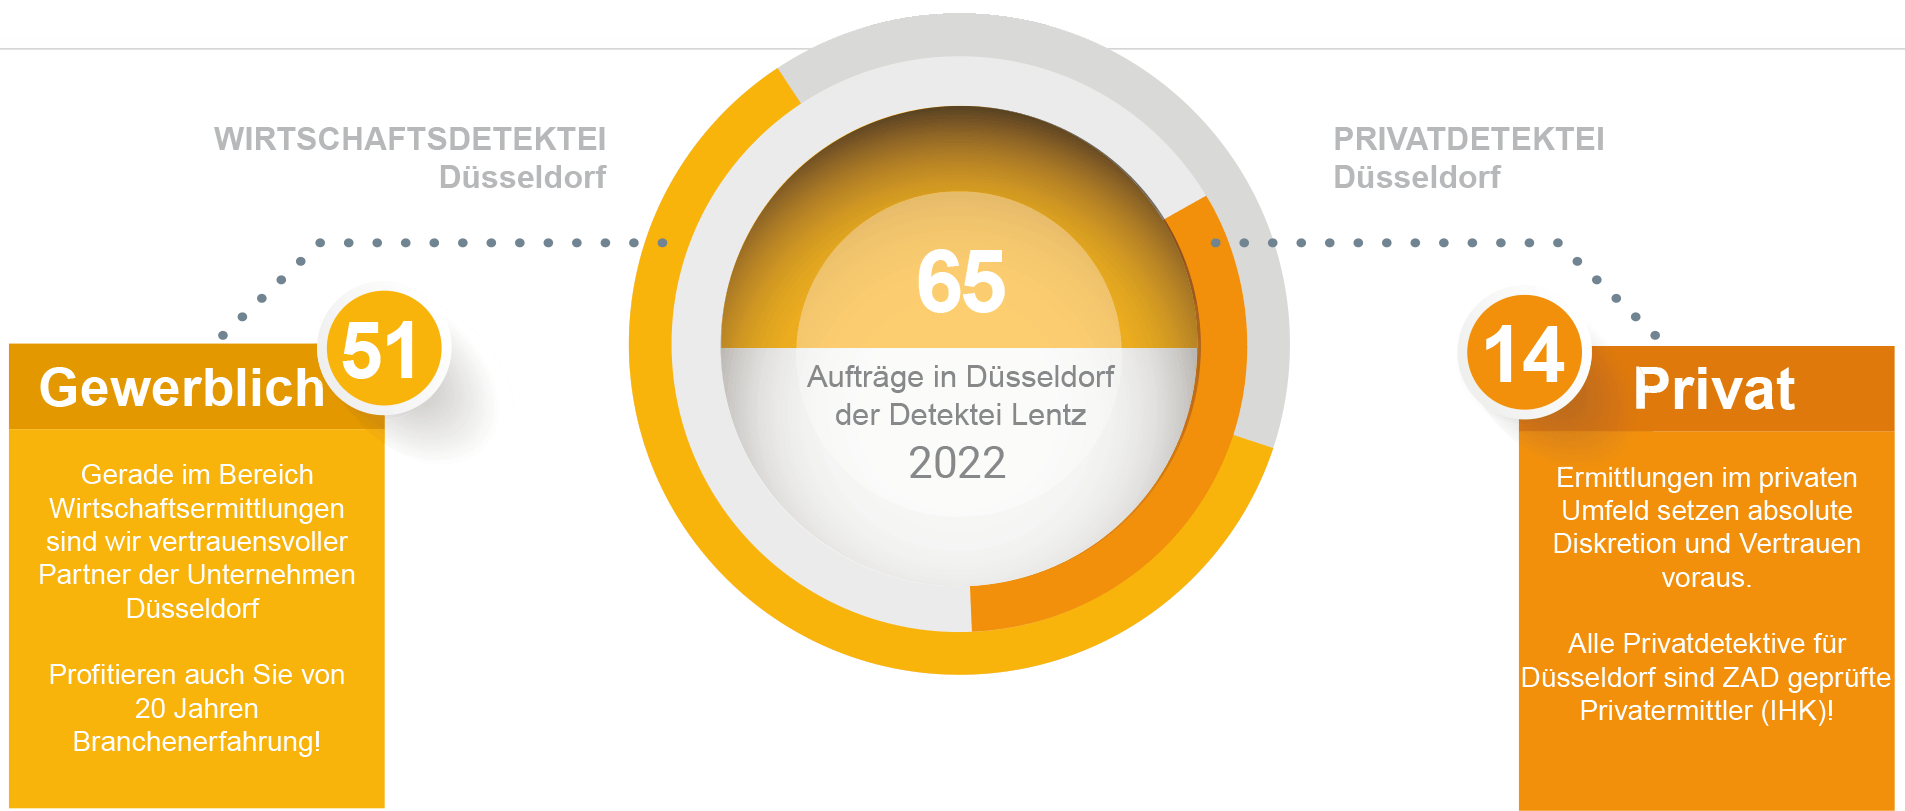 Aufträge für 2022 der Detektei Düsseldorf